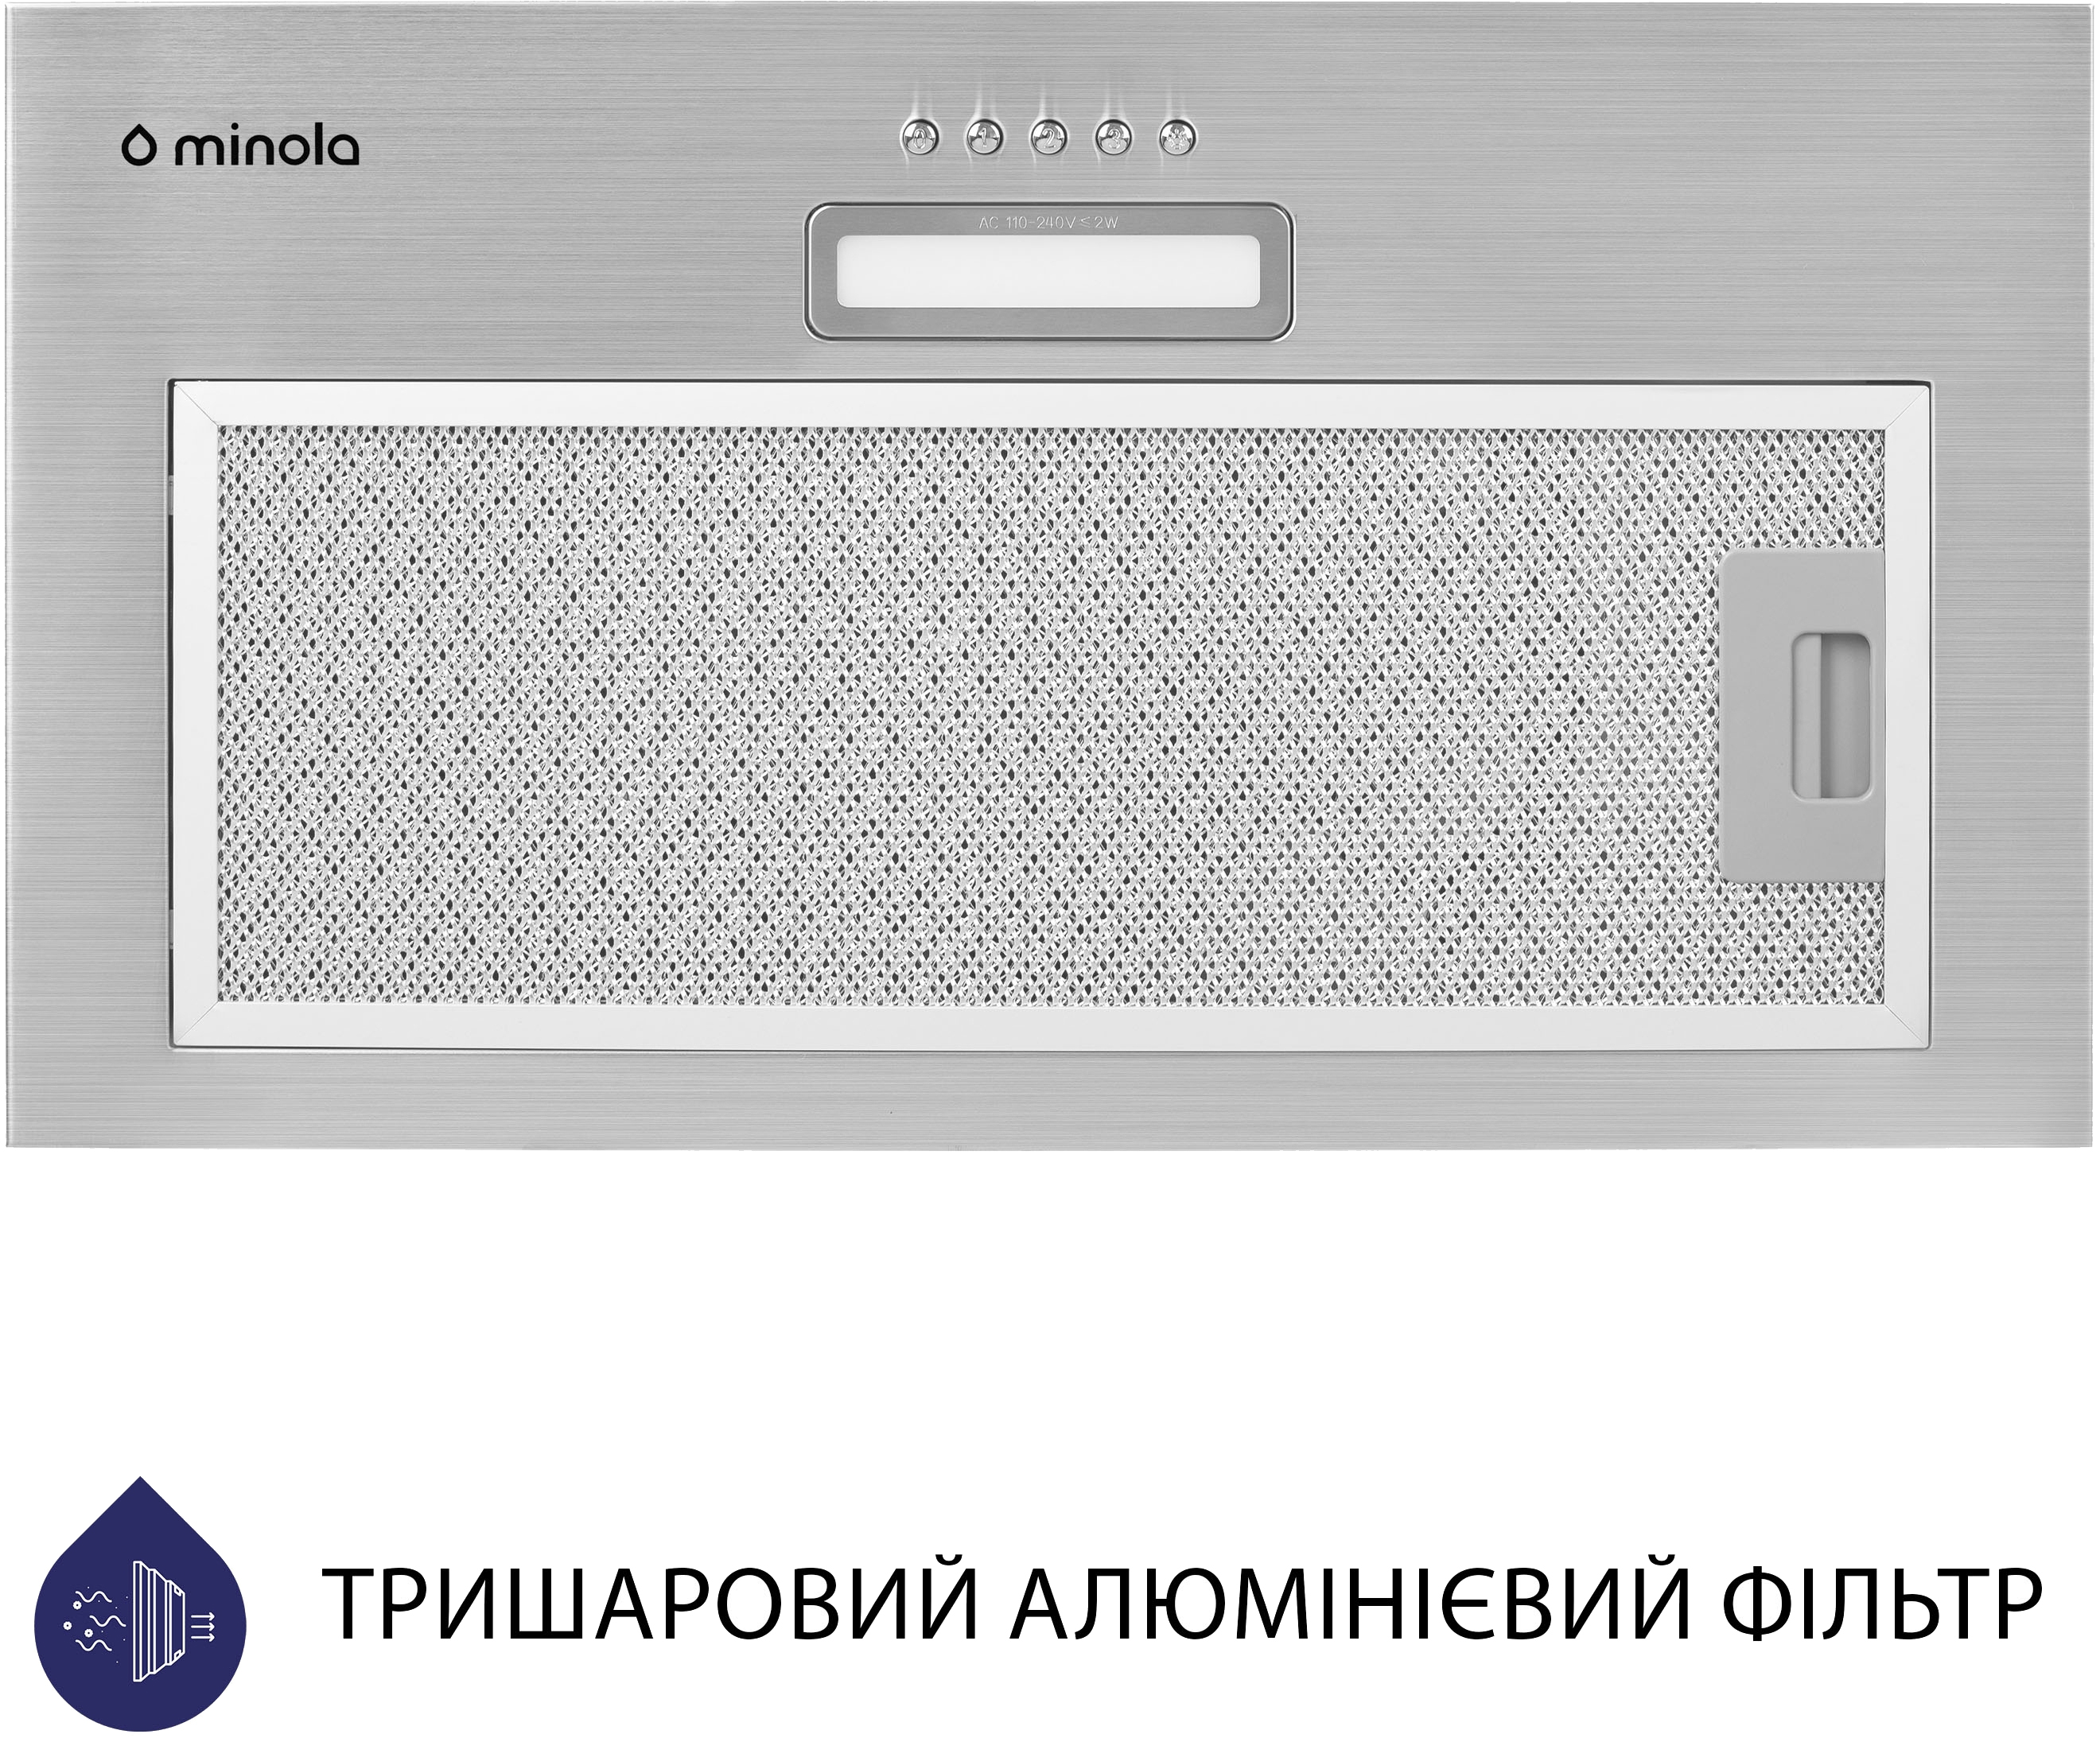 Кухонна витяжка Minola HBI 5025 I LED відгуки - зображення 5